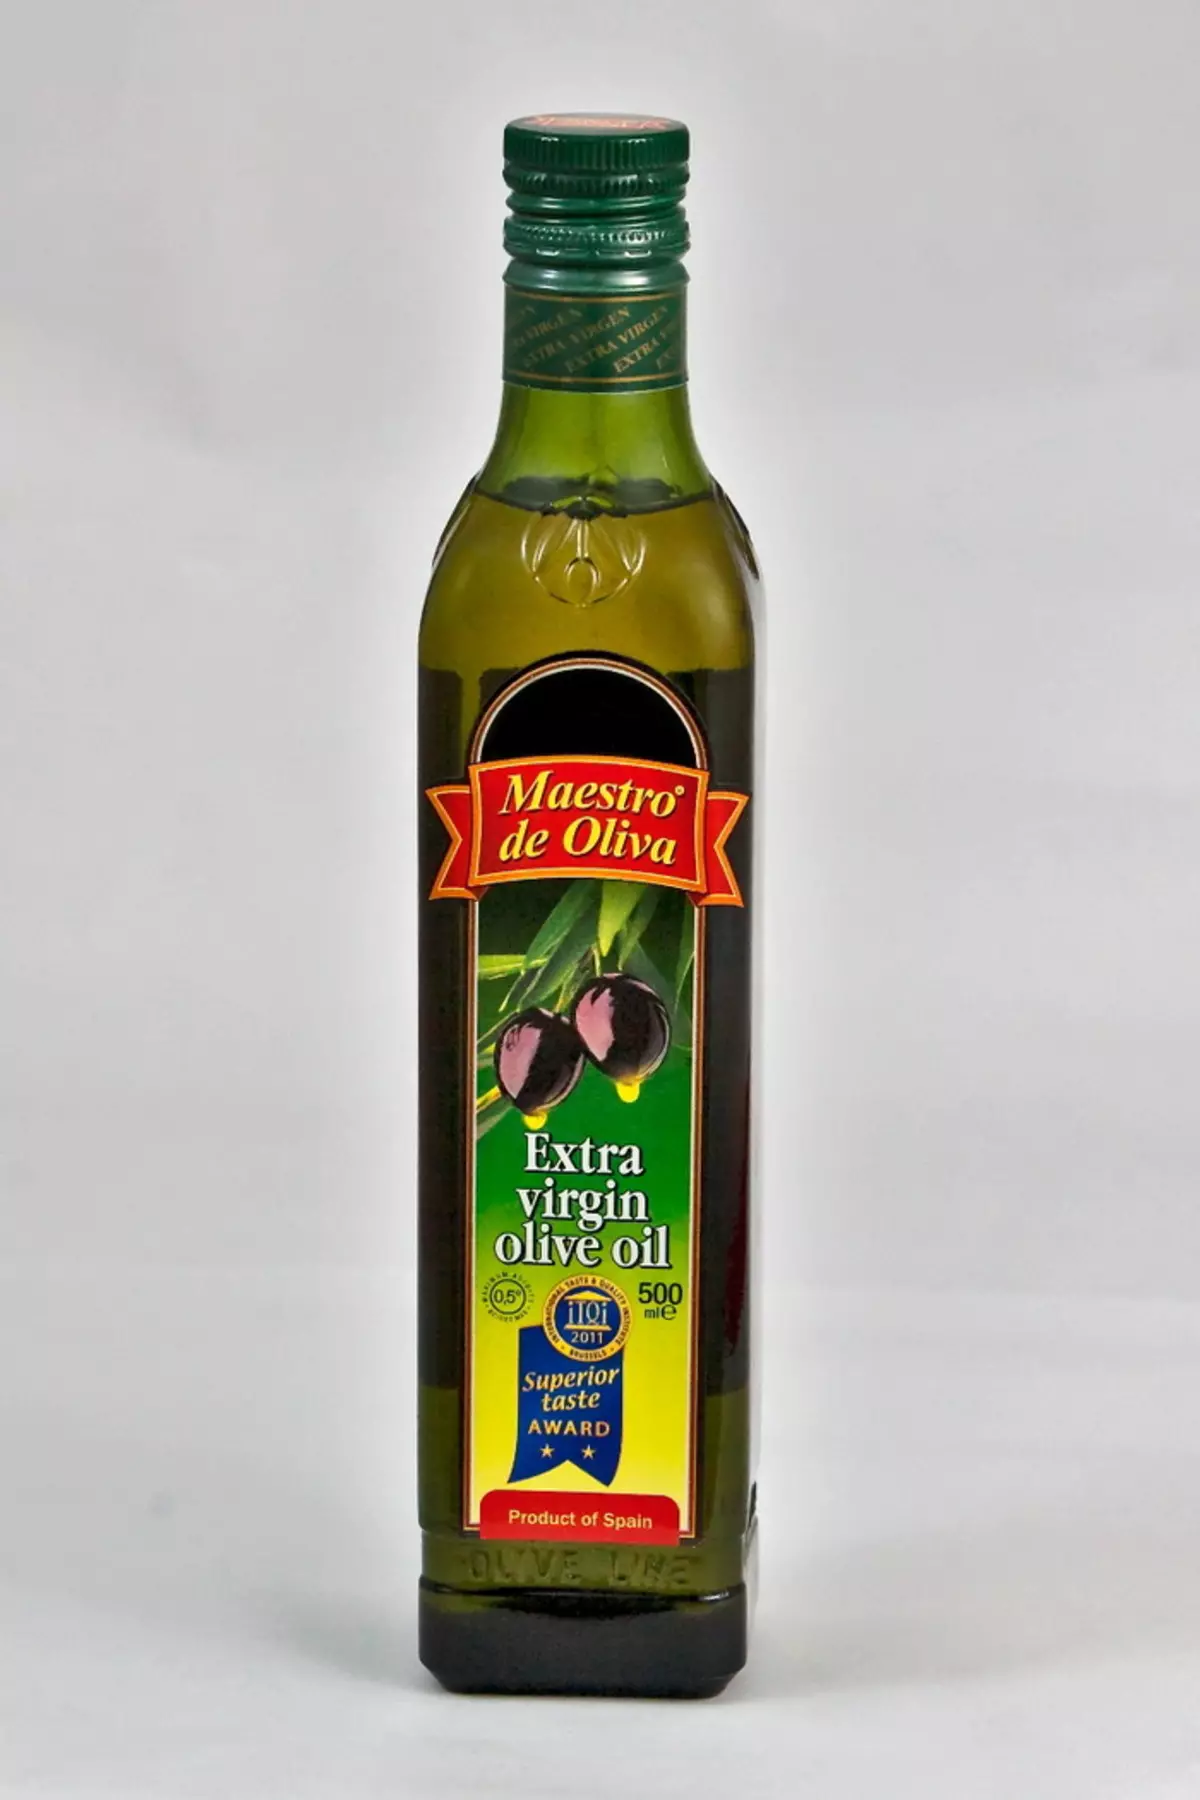 Оливковое масло является